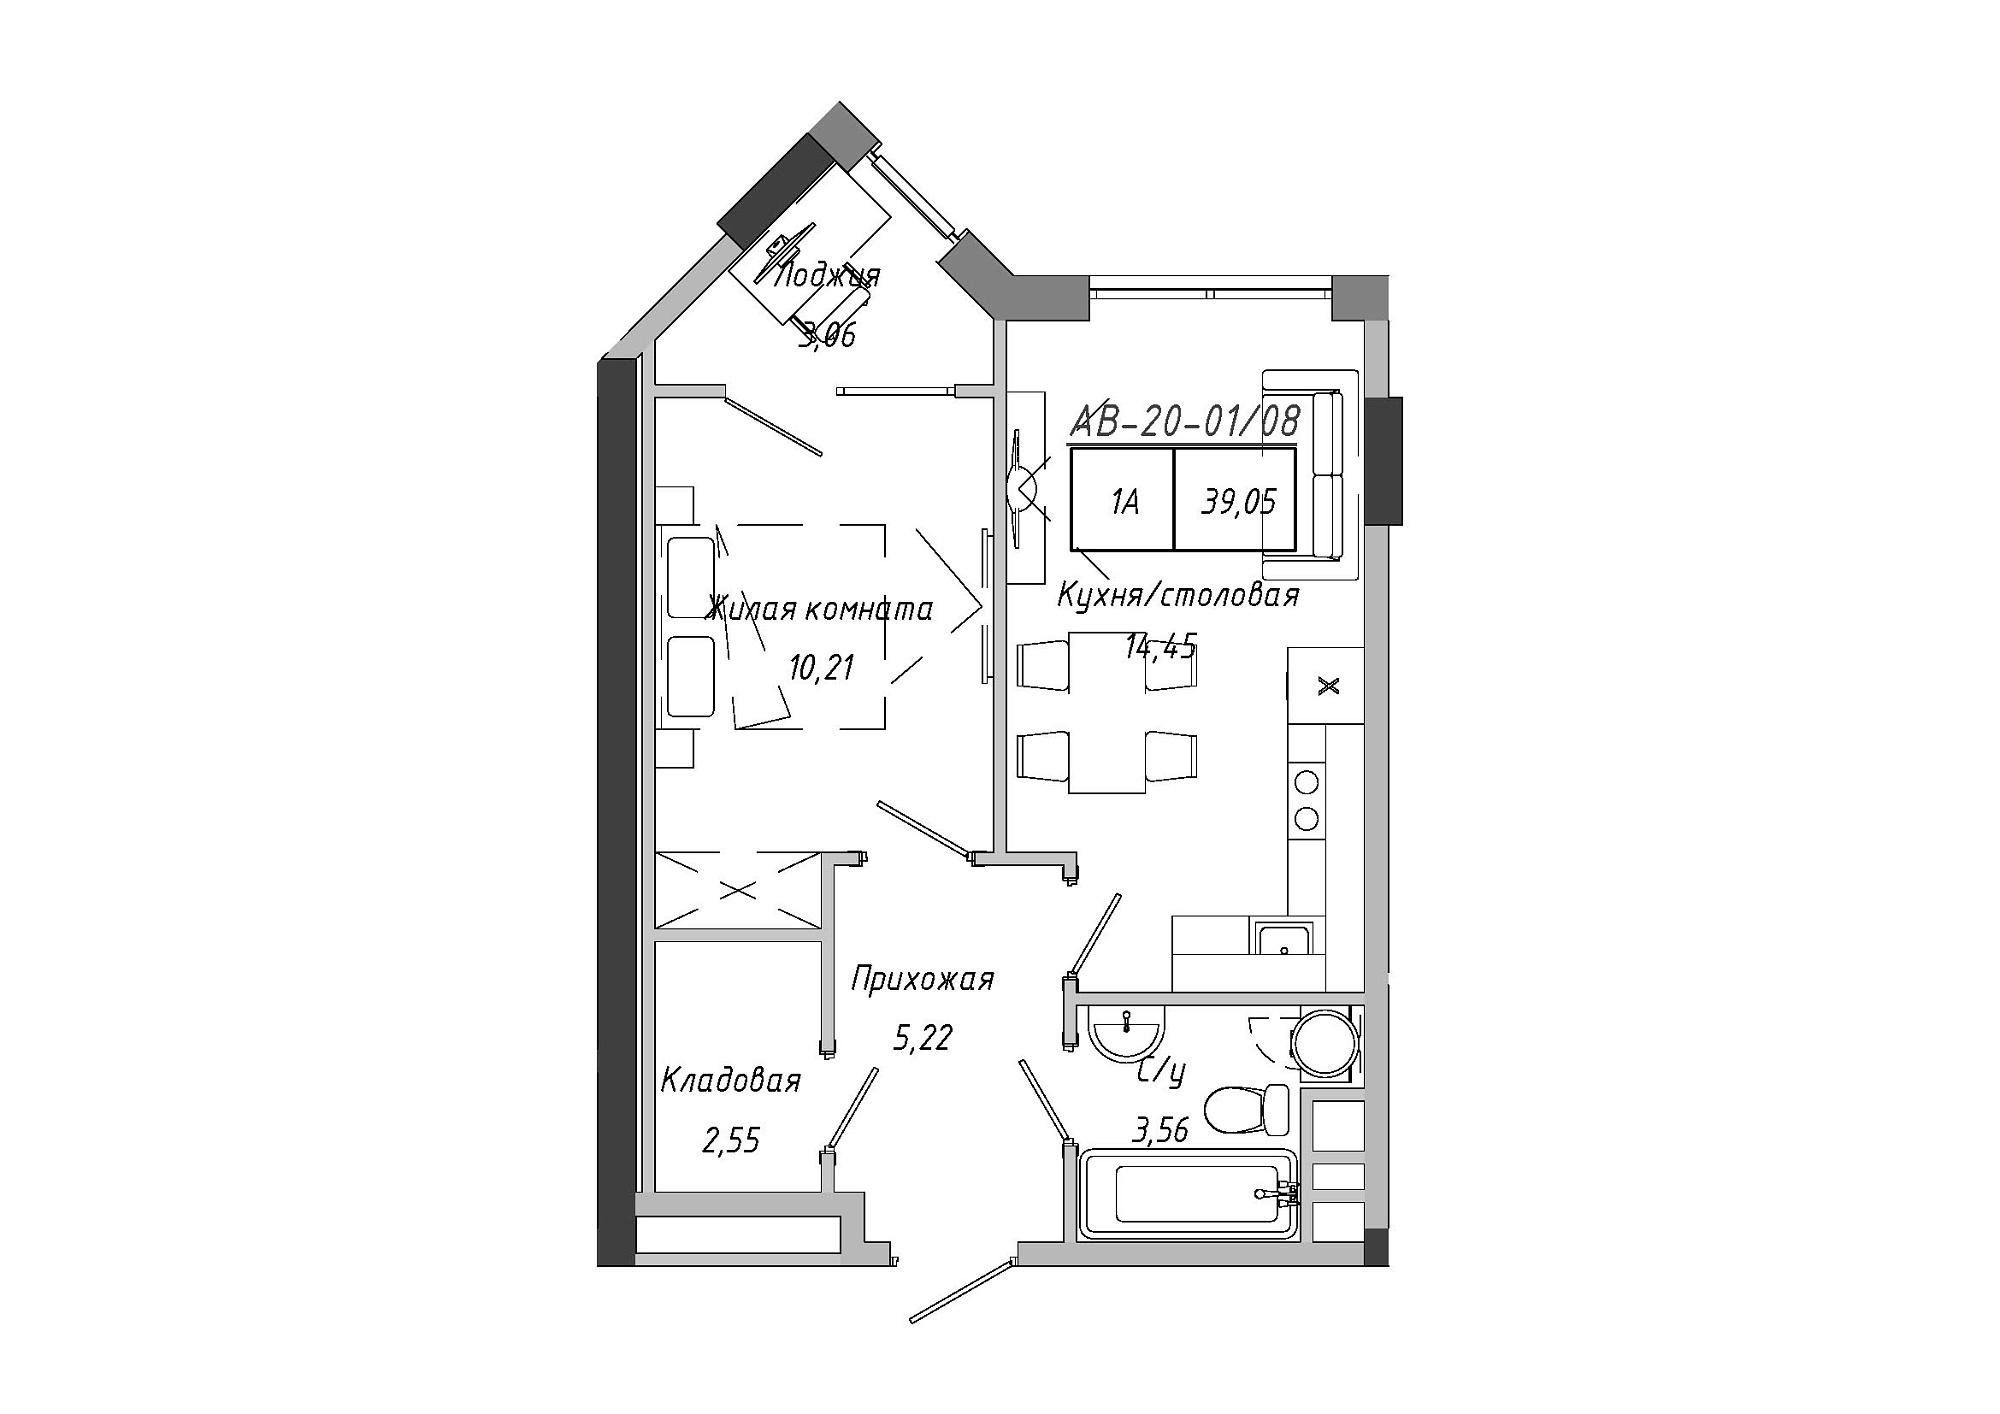 Планировка 1-к квартира площей 39.05м2, AB-20-01/00008.